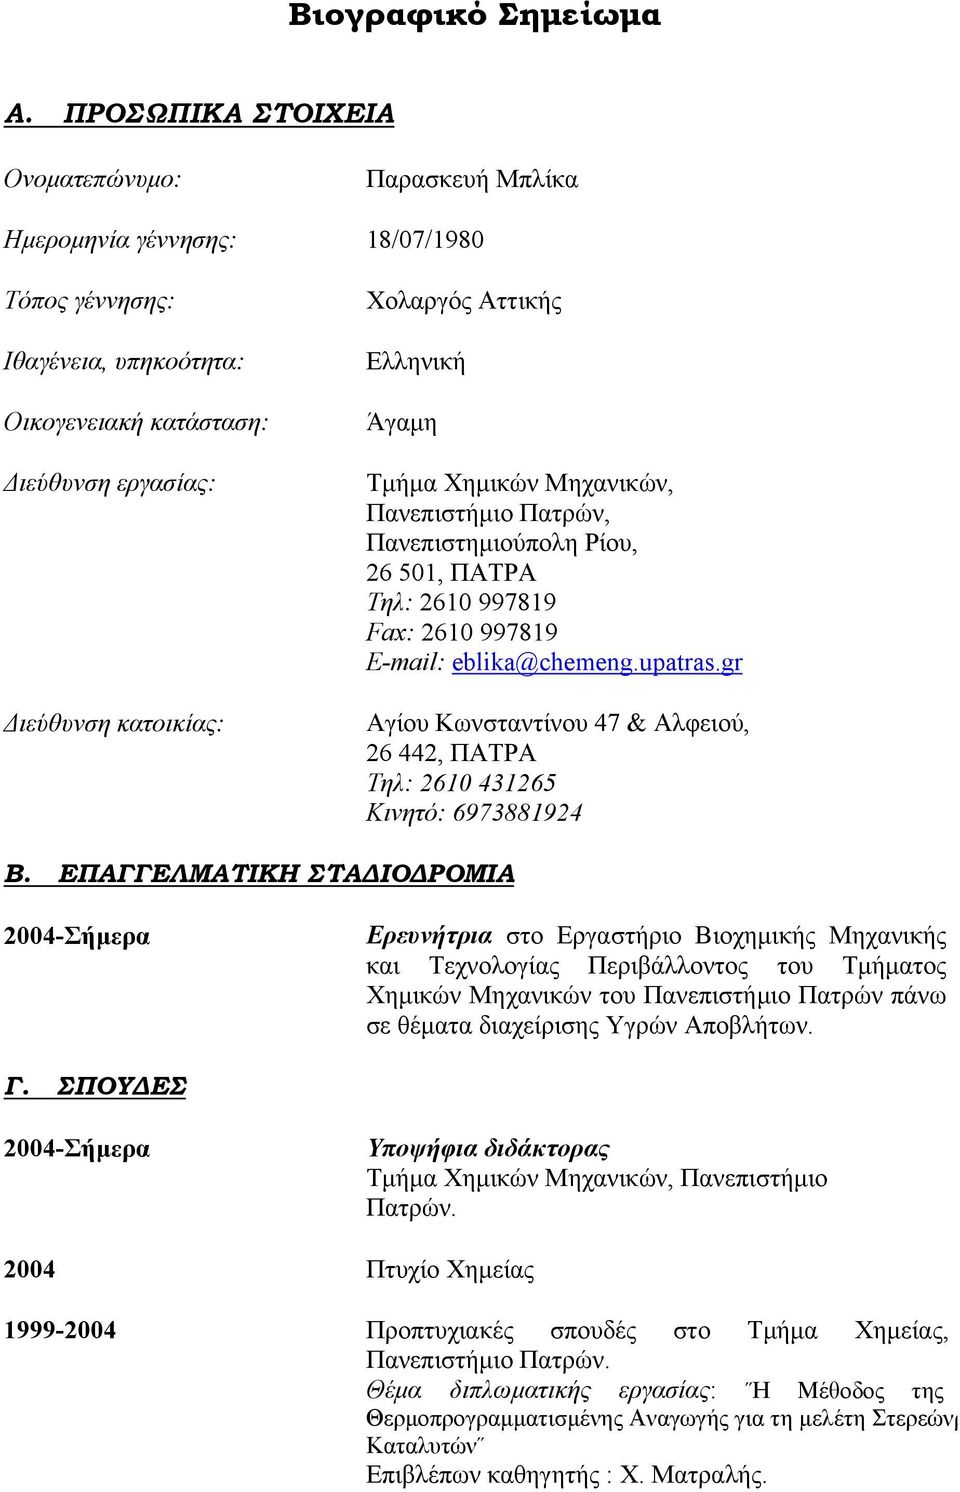 Αττικής Ελληνική Άγαμη Τμήμα Χημικών Μηχανικών, Πανεπιστήμιο Πατρών, Πανεπιστημιούπολη Ρίου, 26 501, ΠΑΤΡΑ Τηλ: 2610 997819 Fax: 2610 997819 E-mail: eblika@chemeng.upatras.